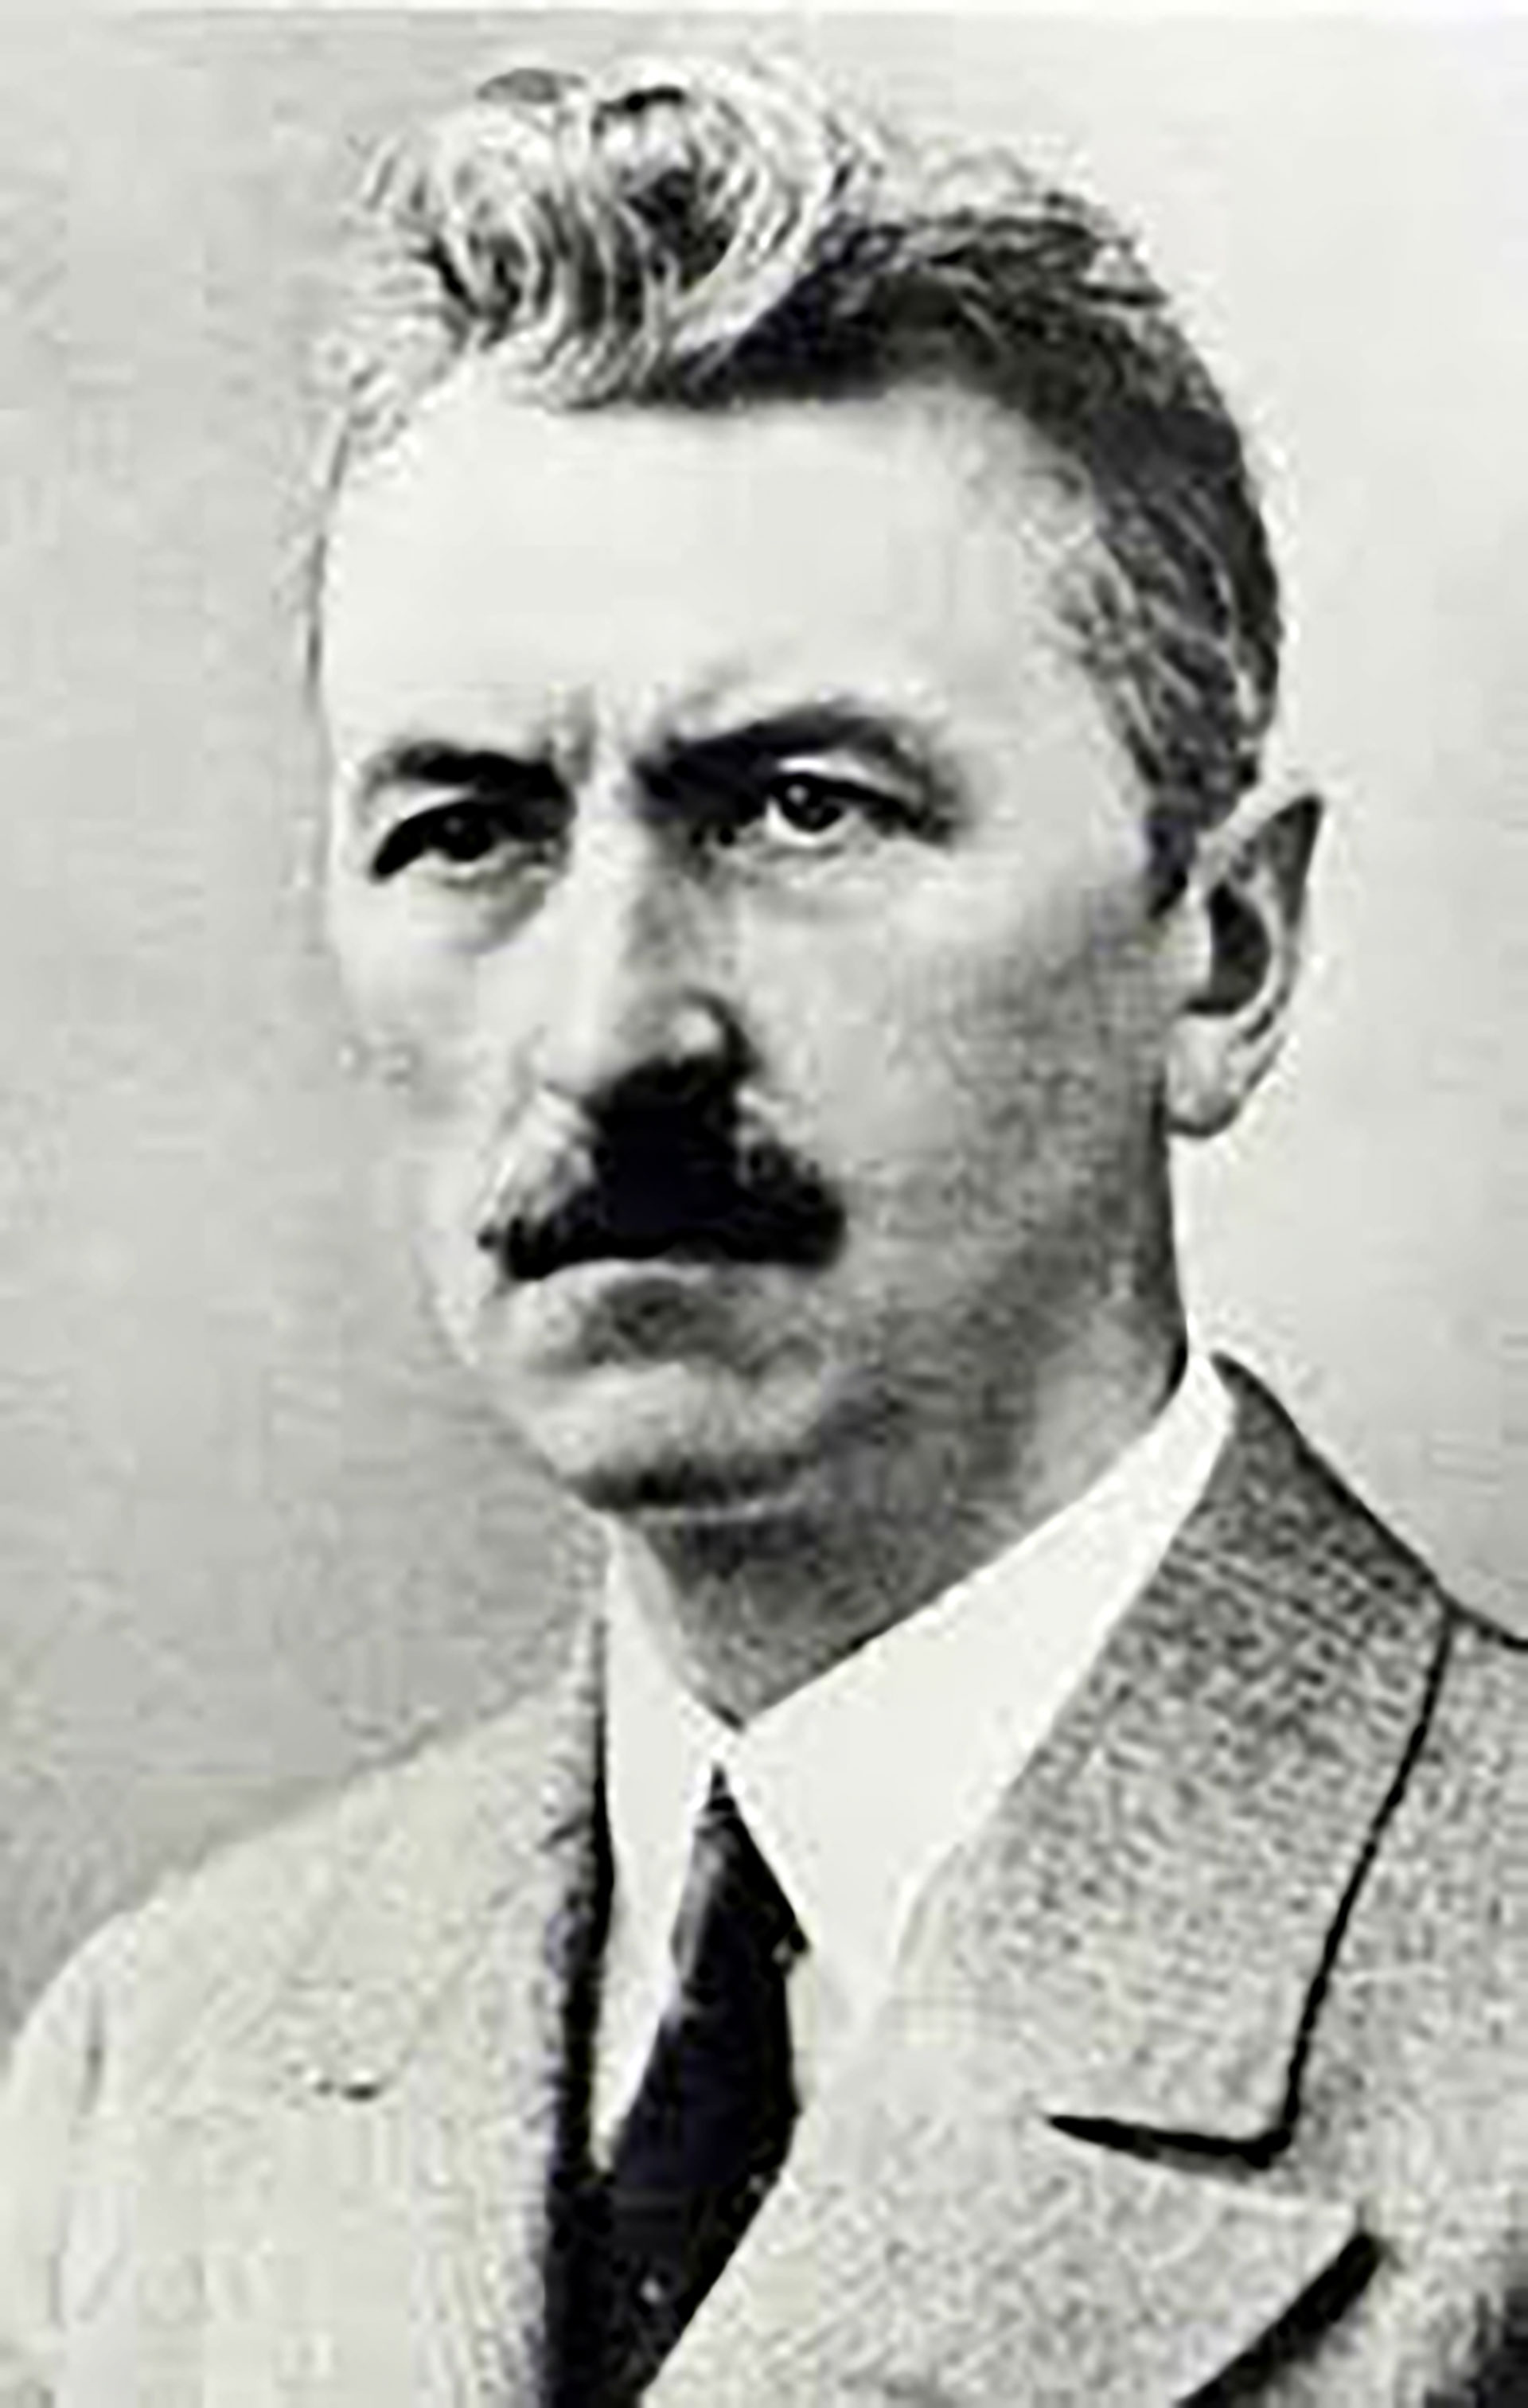 Georg Neithardt, el juez que liberó a Hitler y desató la monstruosidad del nazismo